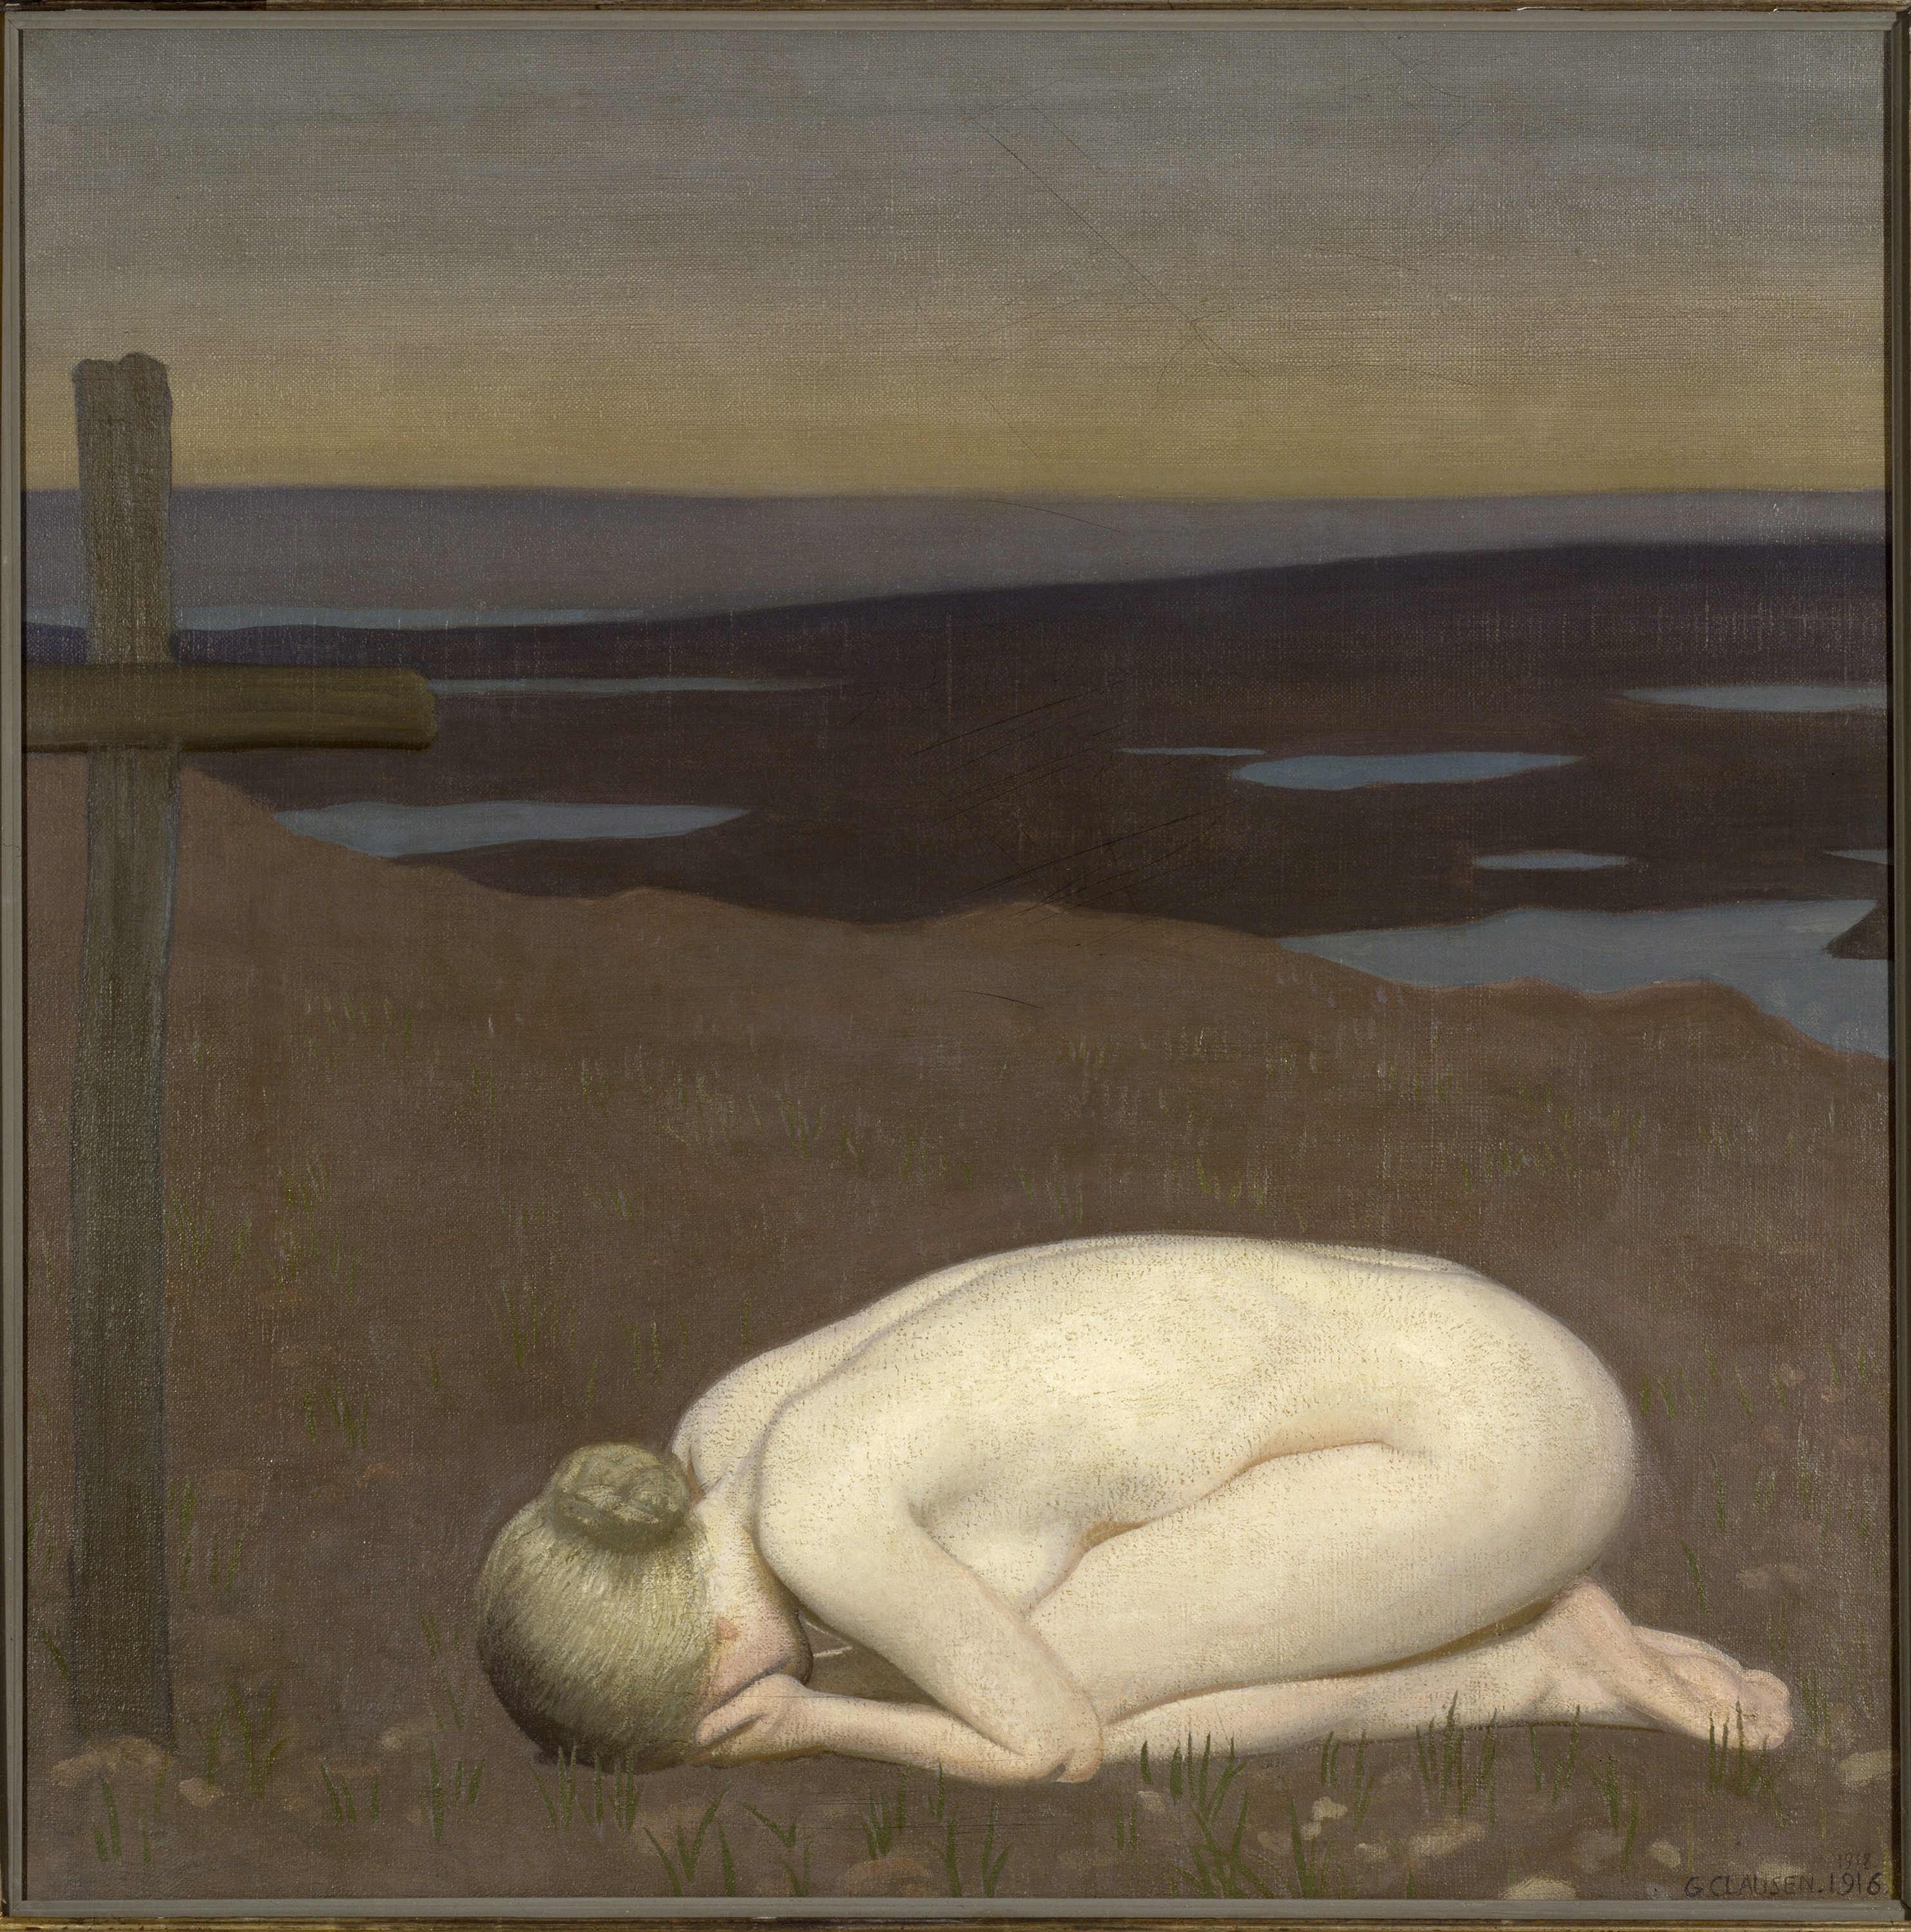 青春哀悼 by George Clausen - 1916 - 91.4 x 91.4 cm 